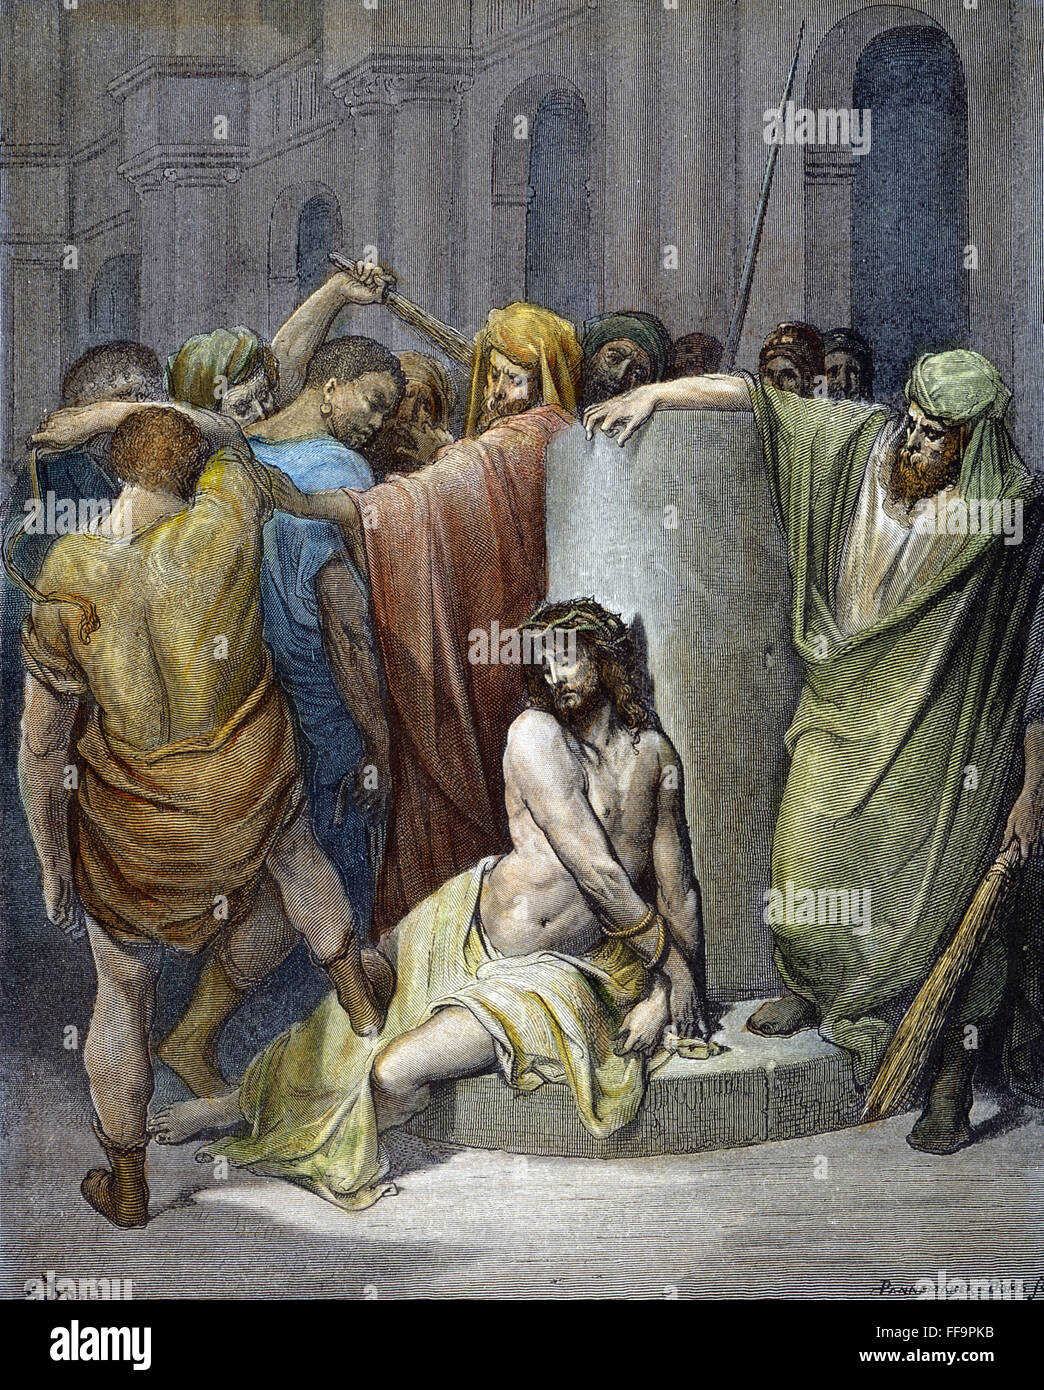 Jésus : flagellation. /Nla flagellation de Jésus par l'ordre de Ponce Pilate (Jean 19:1). La gravure sur bois après Gustave DorΘ. Banque D'Images